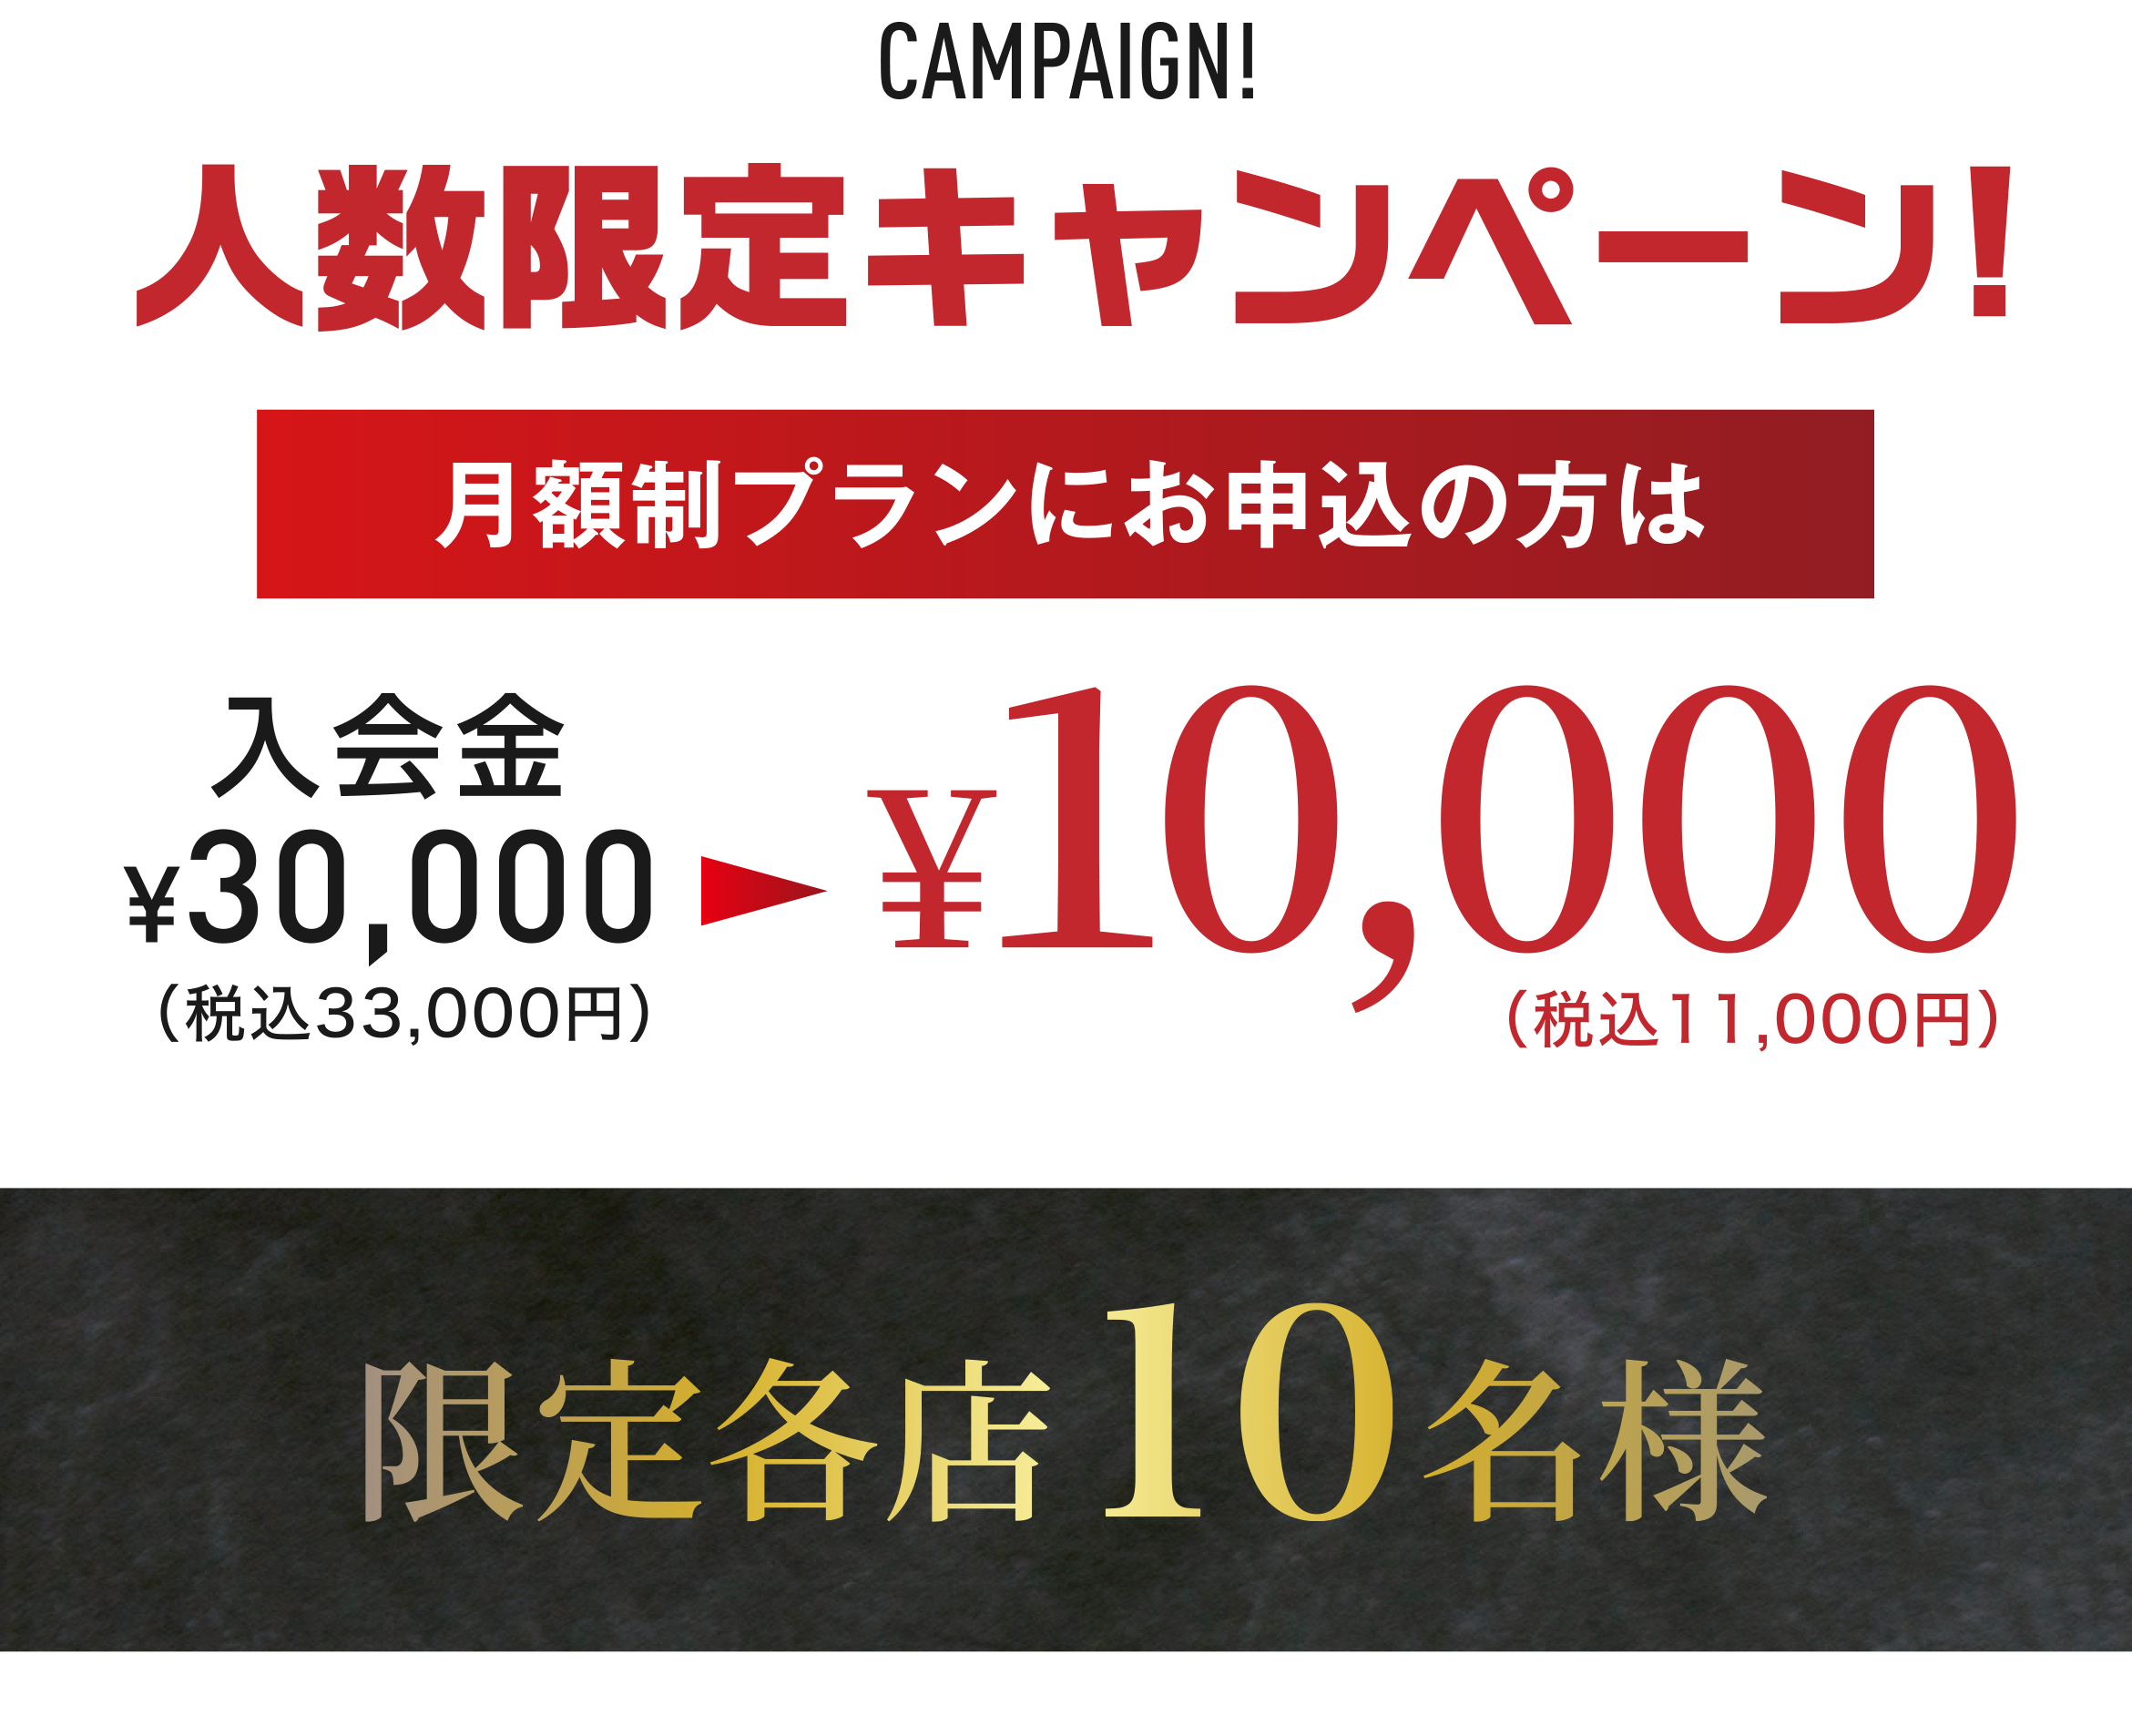 期間限定キャンペーン!月額制プランにお申込の方は入会金¥10,000